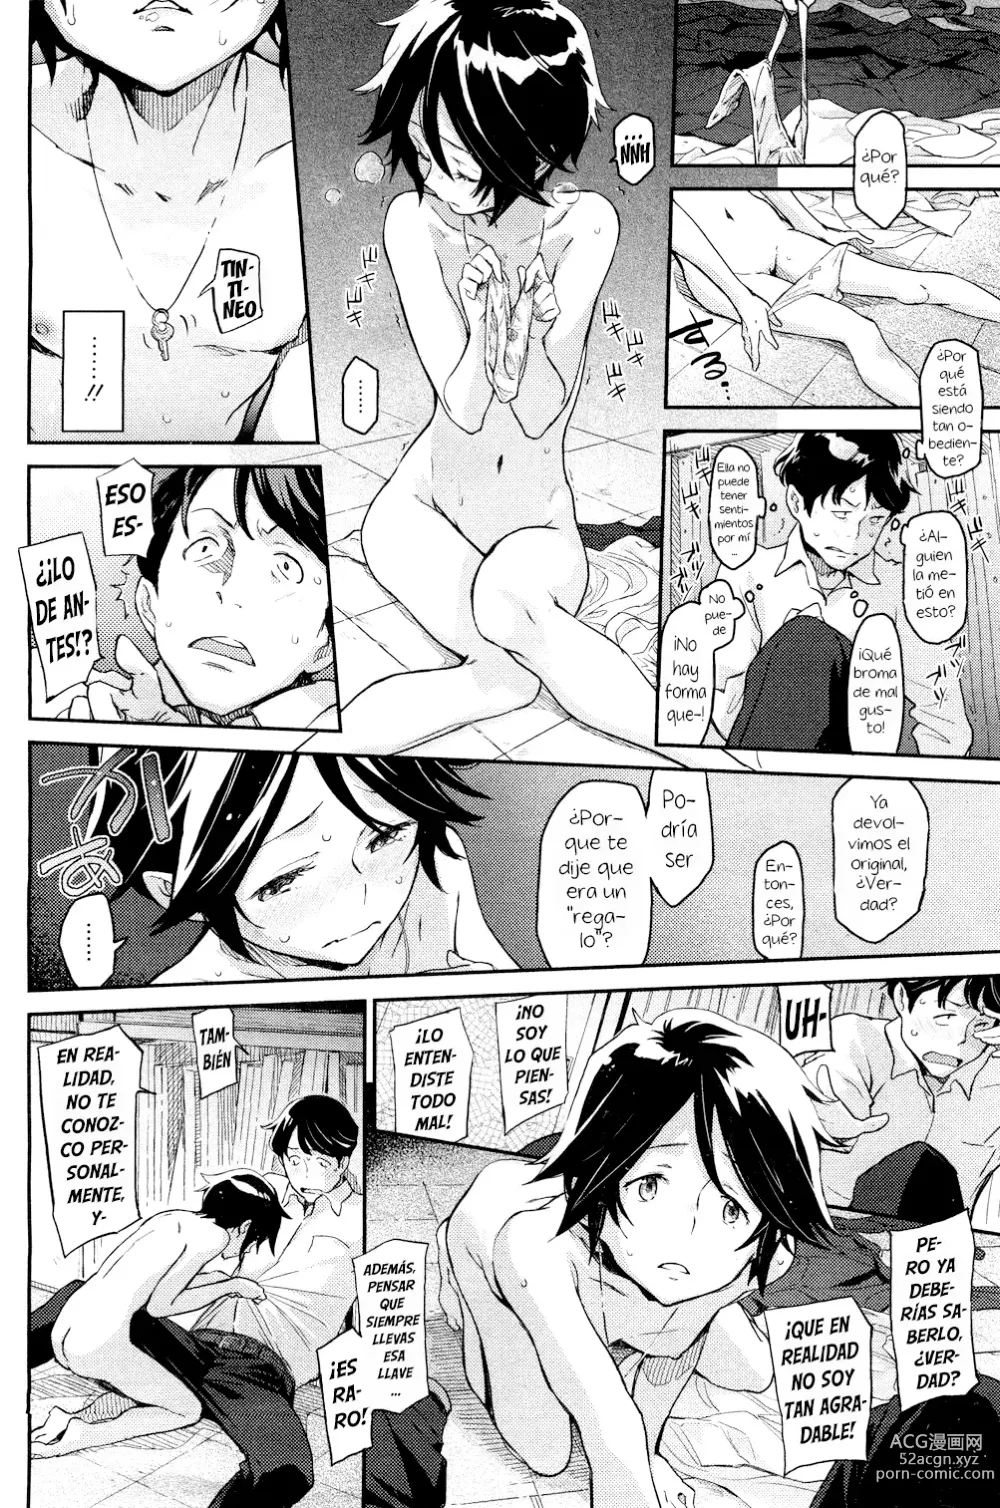 Page 12 of manga Spare Key